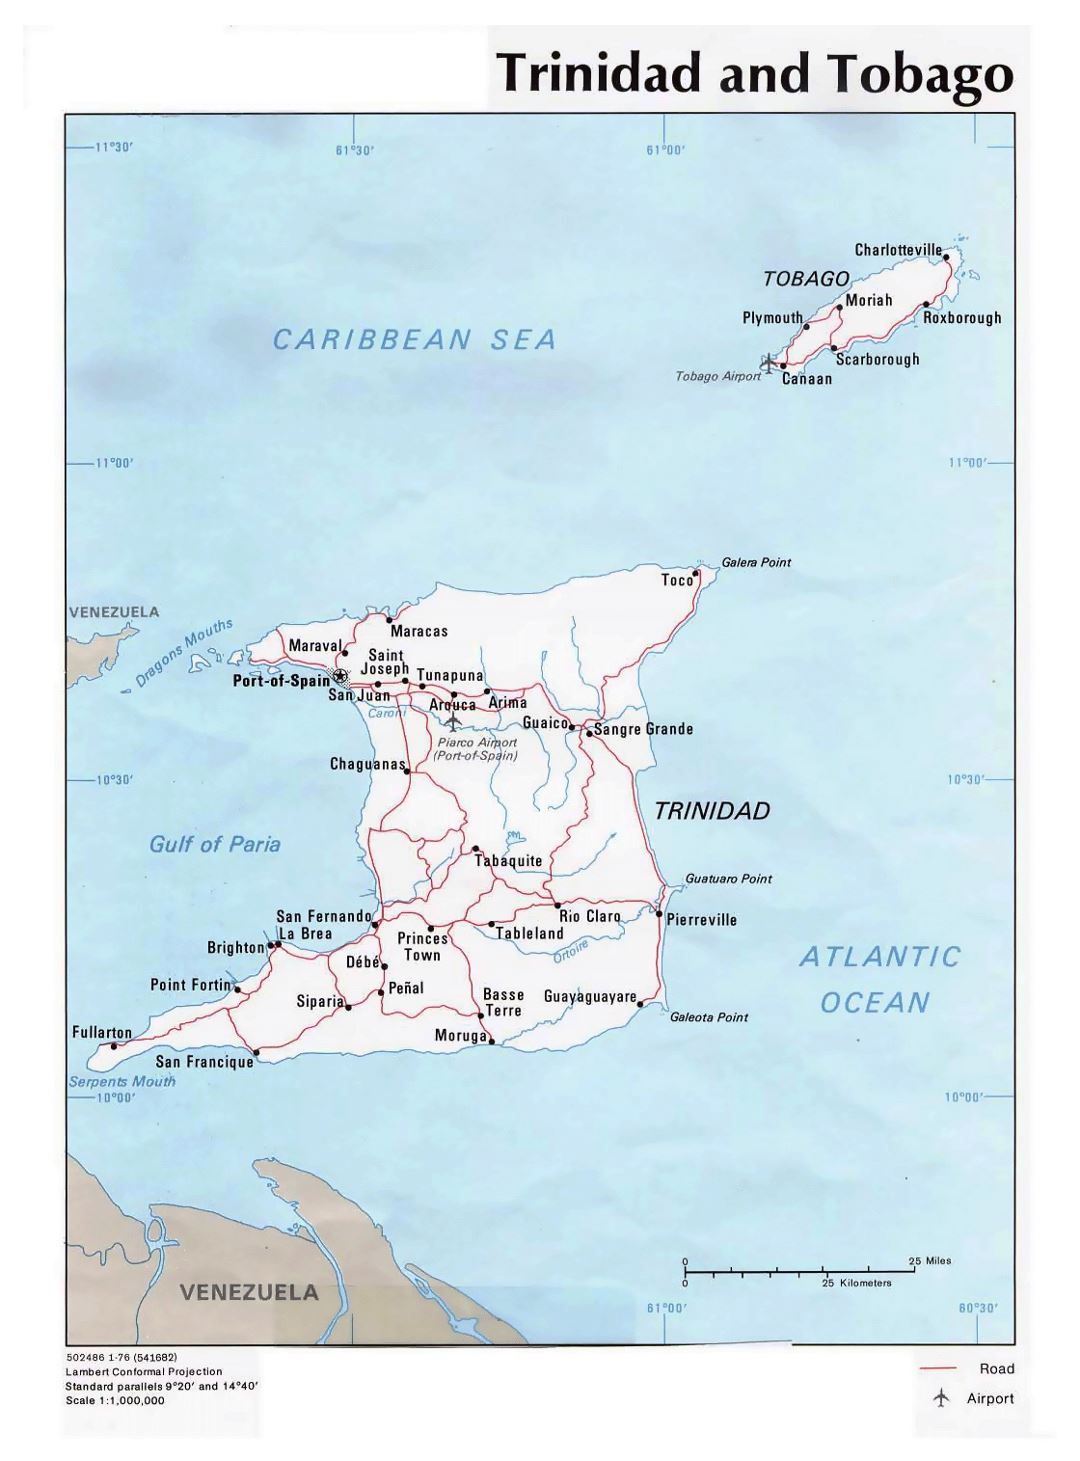 Детальная политическая карта Тринидада и Тобаго с дорогами, городами и аэропортами - 1976